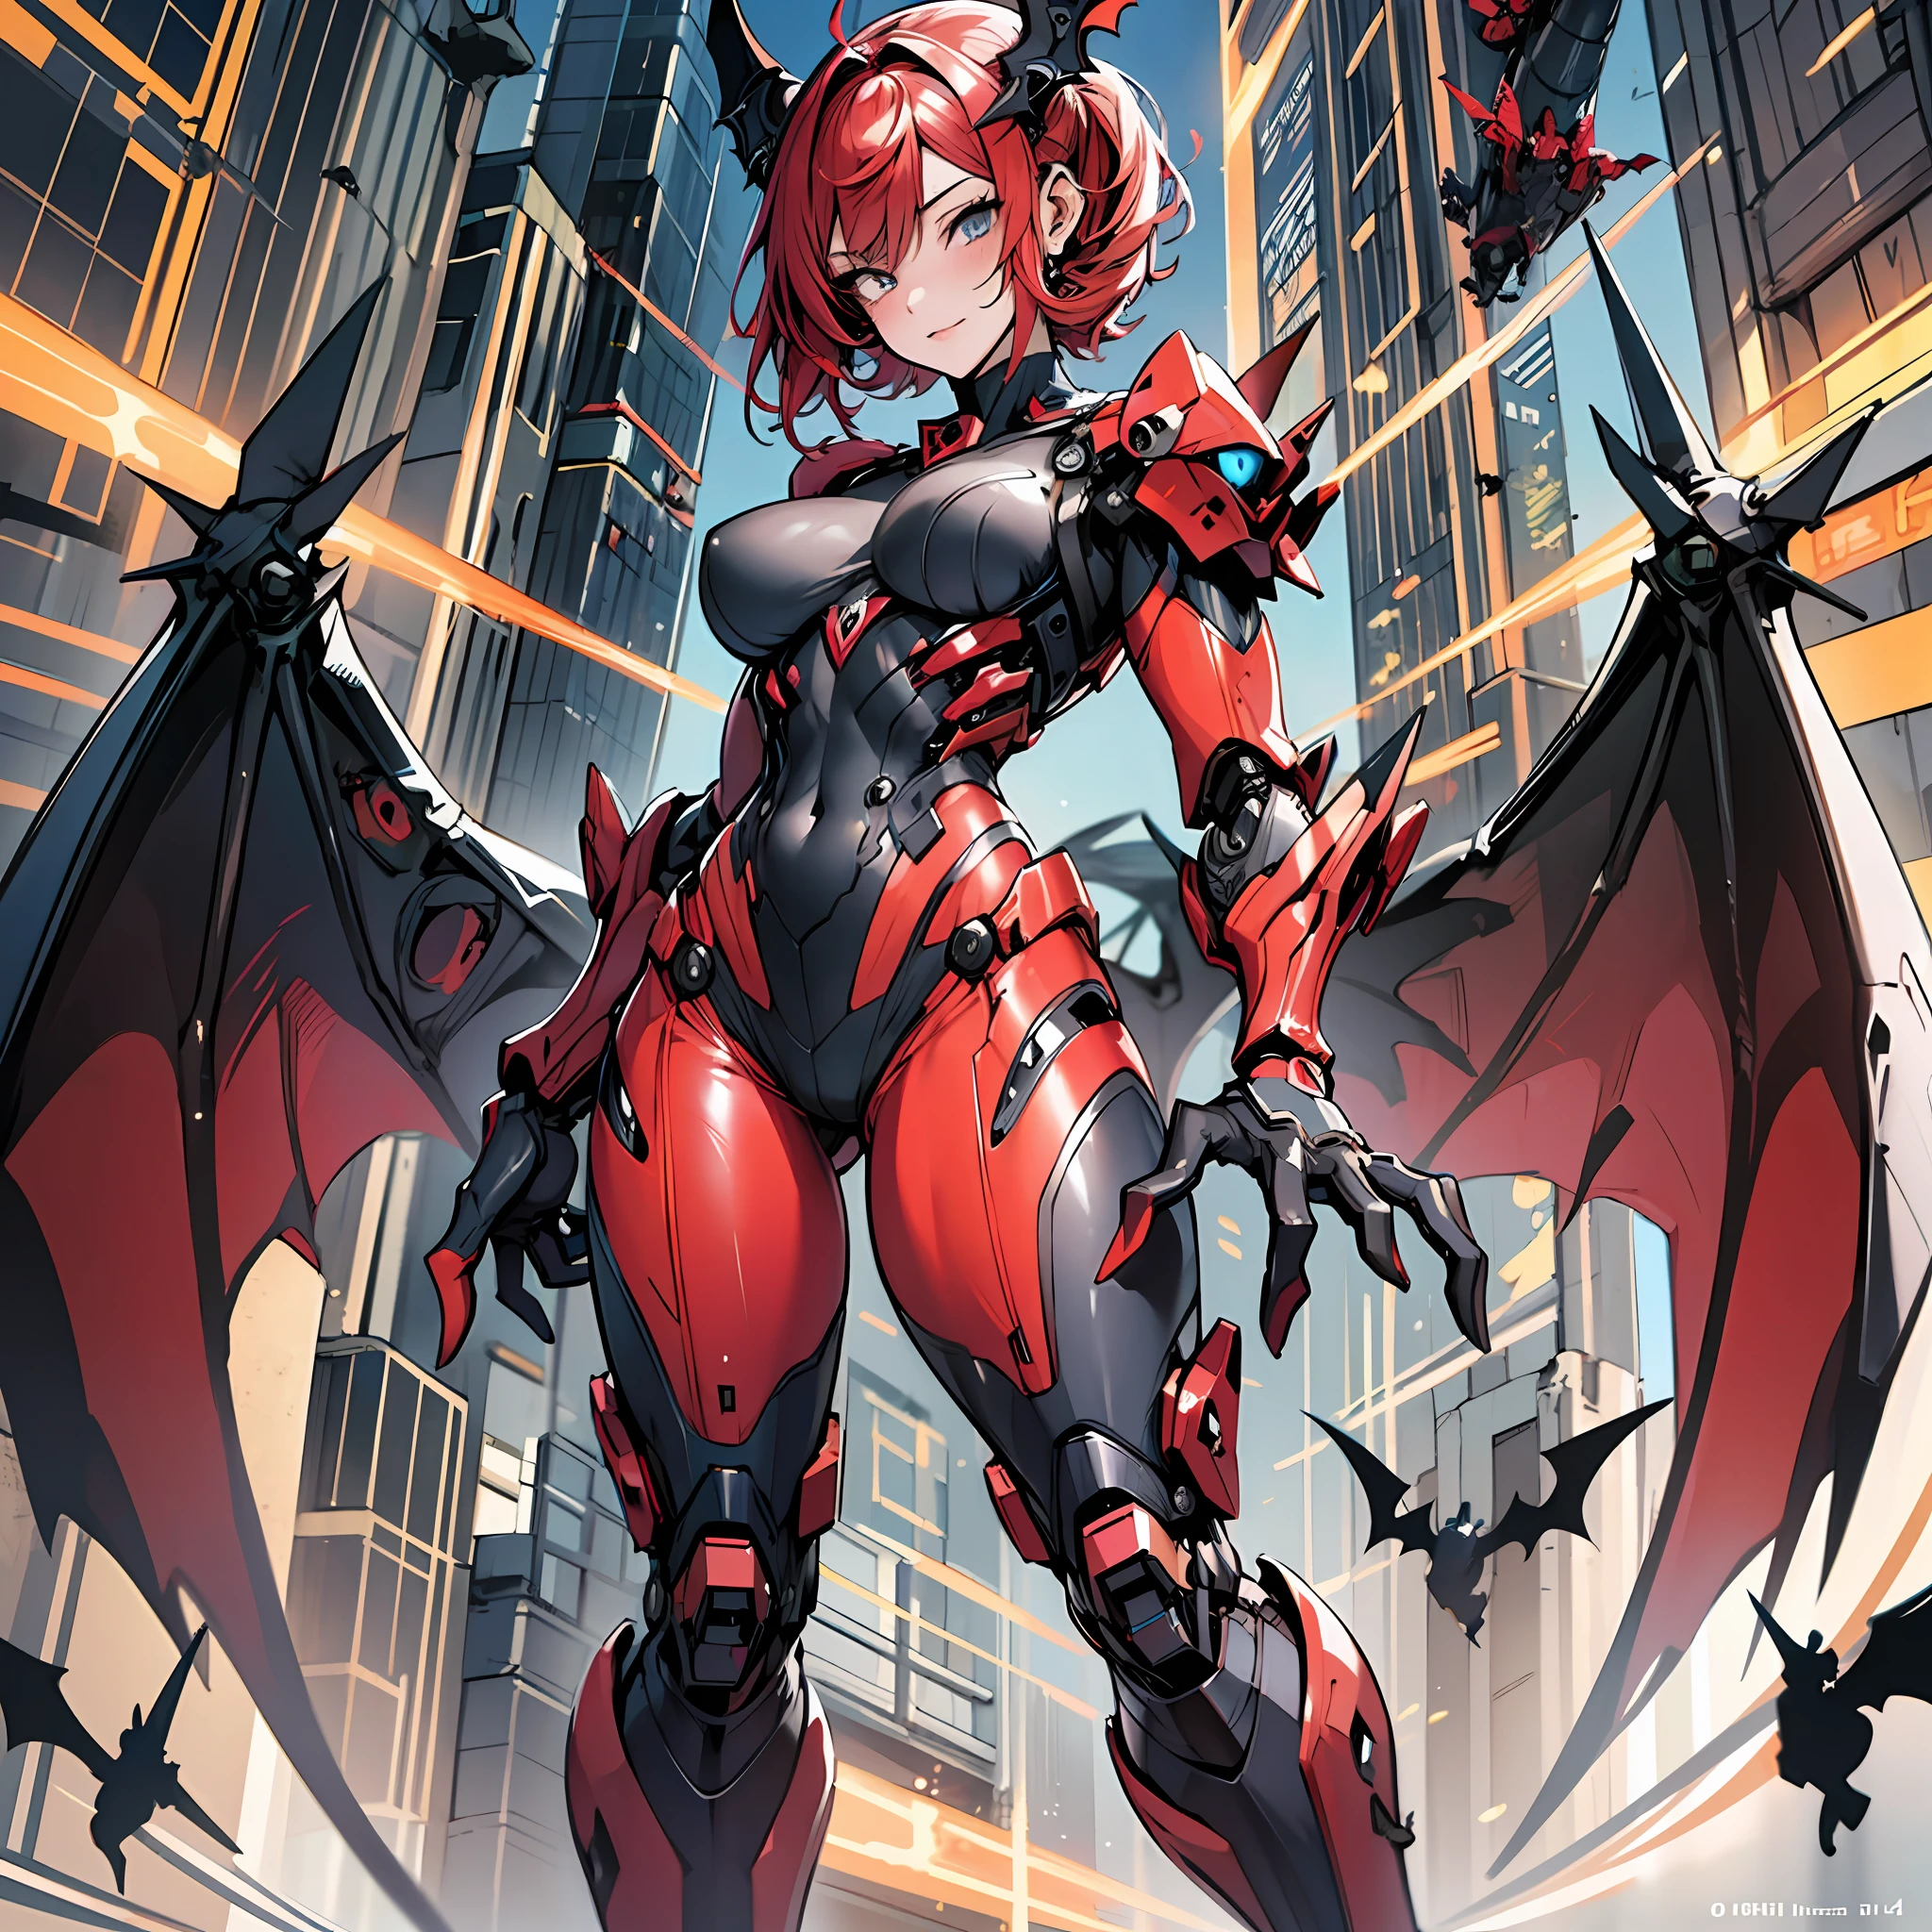 Woman in 하나 color costume, 최고의 애니메이션 4K 벽지, 전신, 하나 red wing, cyberpunk 하나, 기계화 발키리 소녀, 생체역학적, highly detailed artgerm based on 하나, cyborg 하나, 애니메이션 스타일 4k, 하나